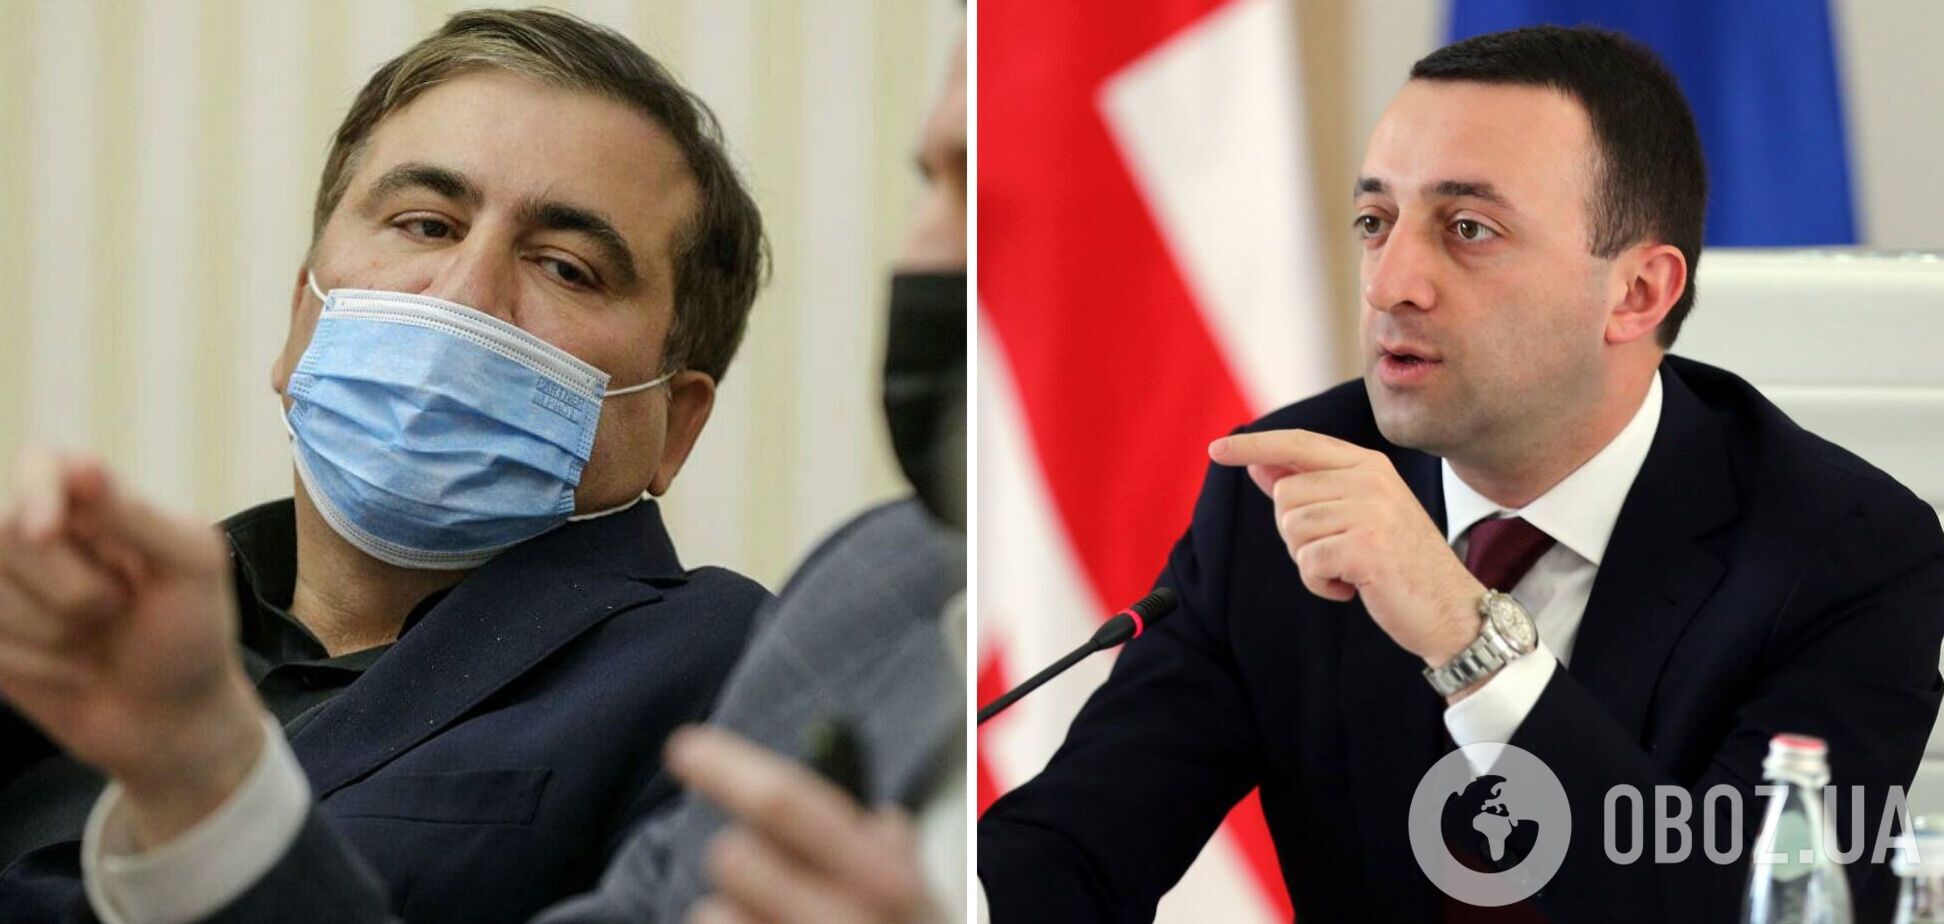 Имеет право на самоубийство: премьер Грузии высказался о голодовке Саакашвили